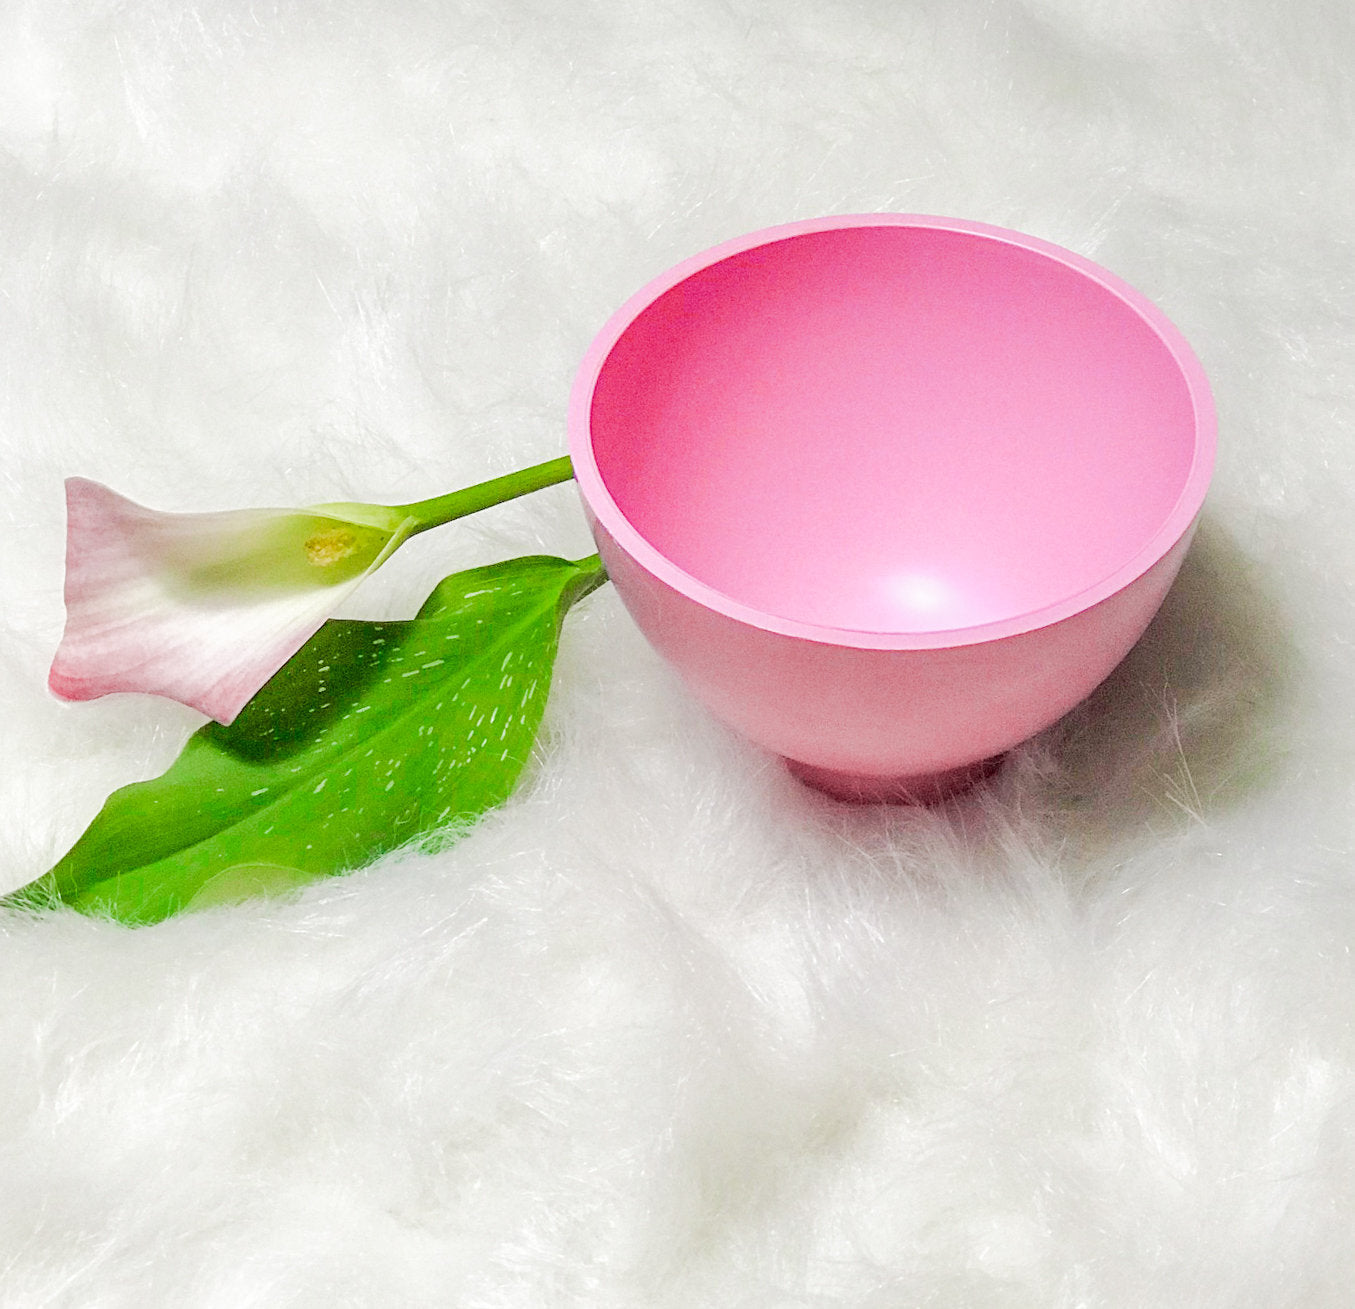 Mixing Bowl - Pink